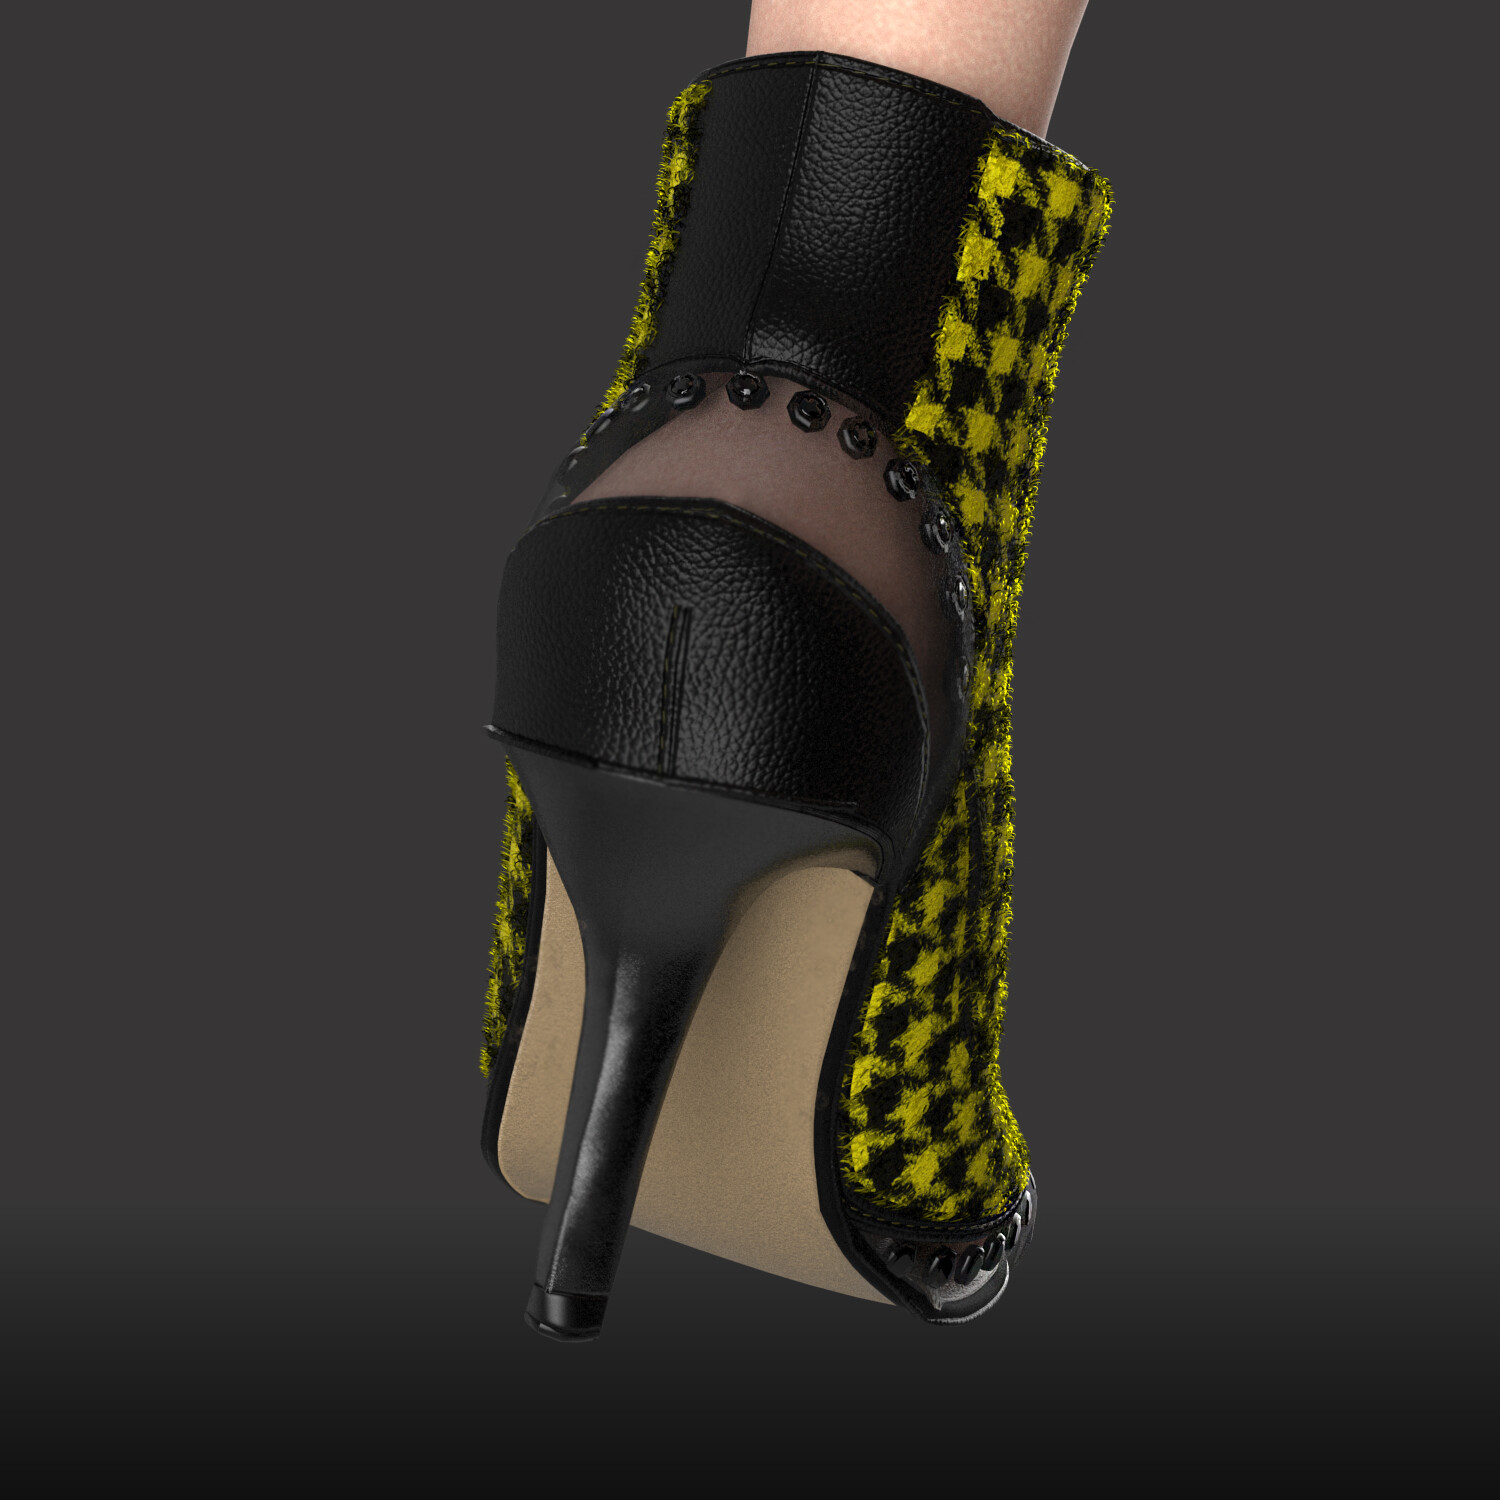 ciffer skraber Panter ArtStation - 3d MODEL - vagabond shoes, Melinda Manunta